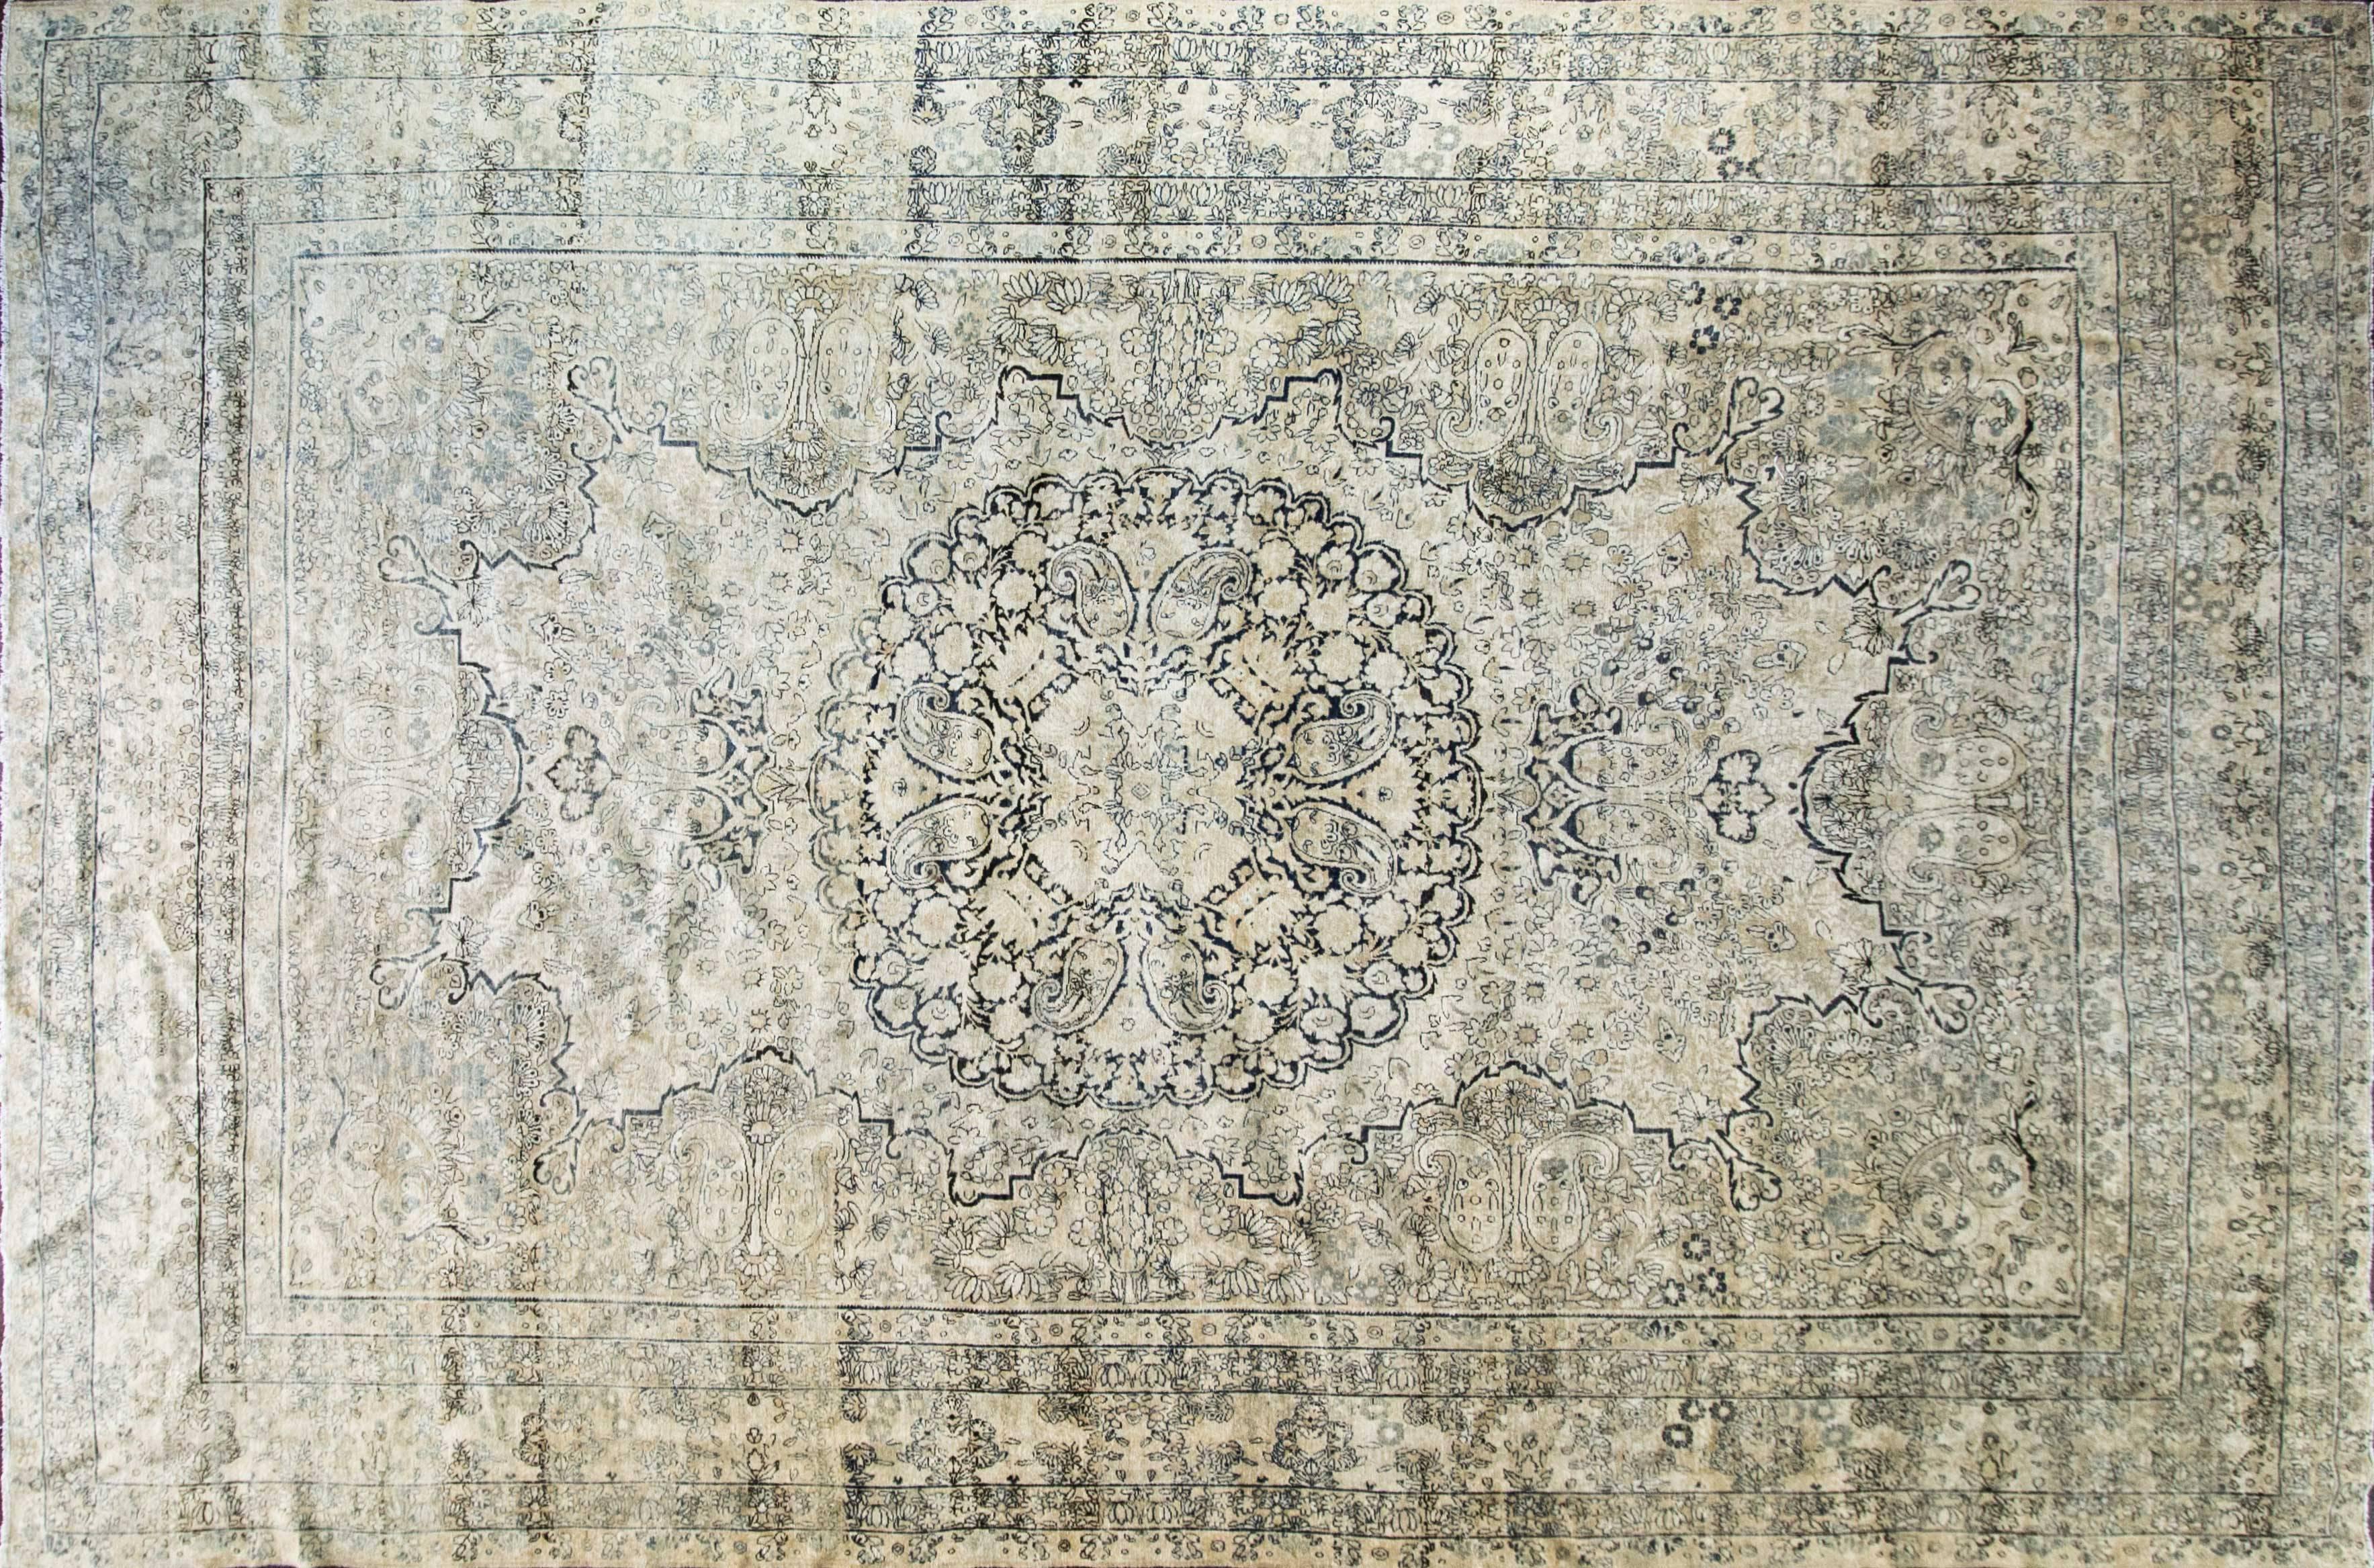 Kerman war ein sehr bedeutendes Zentrum der antiken Teppichweberei aus dem Goldenen Zeitalter der persischen Kultur unter der Safawiden-Dynastie im 16. Jahrhundert und stand in seinem Ansehen auf einer Stufe mit Täbris und Kaschan. Die Farbpalette